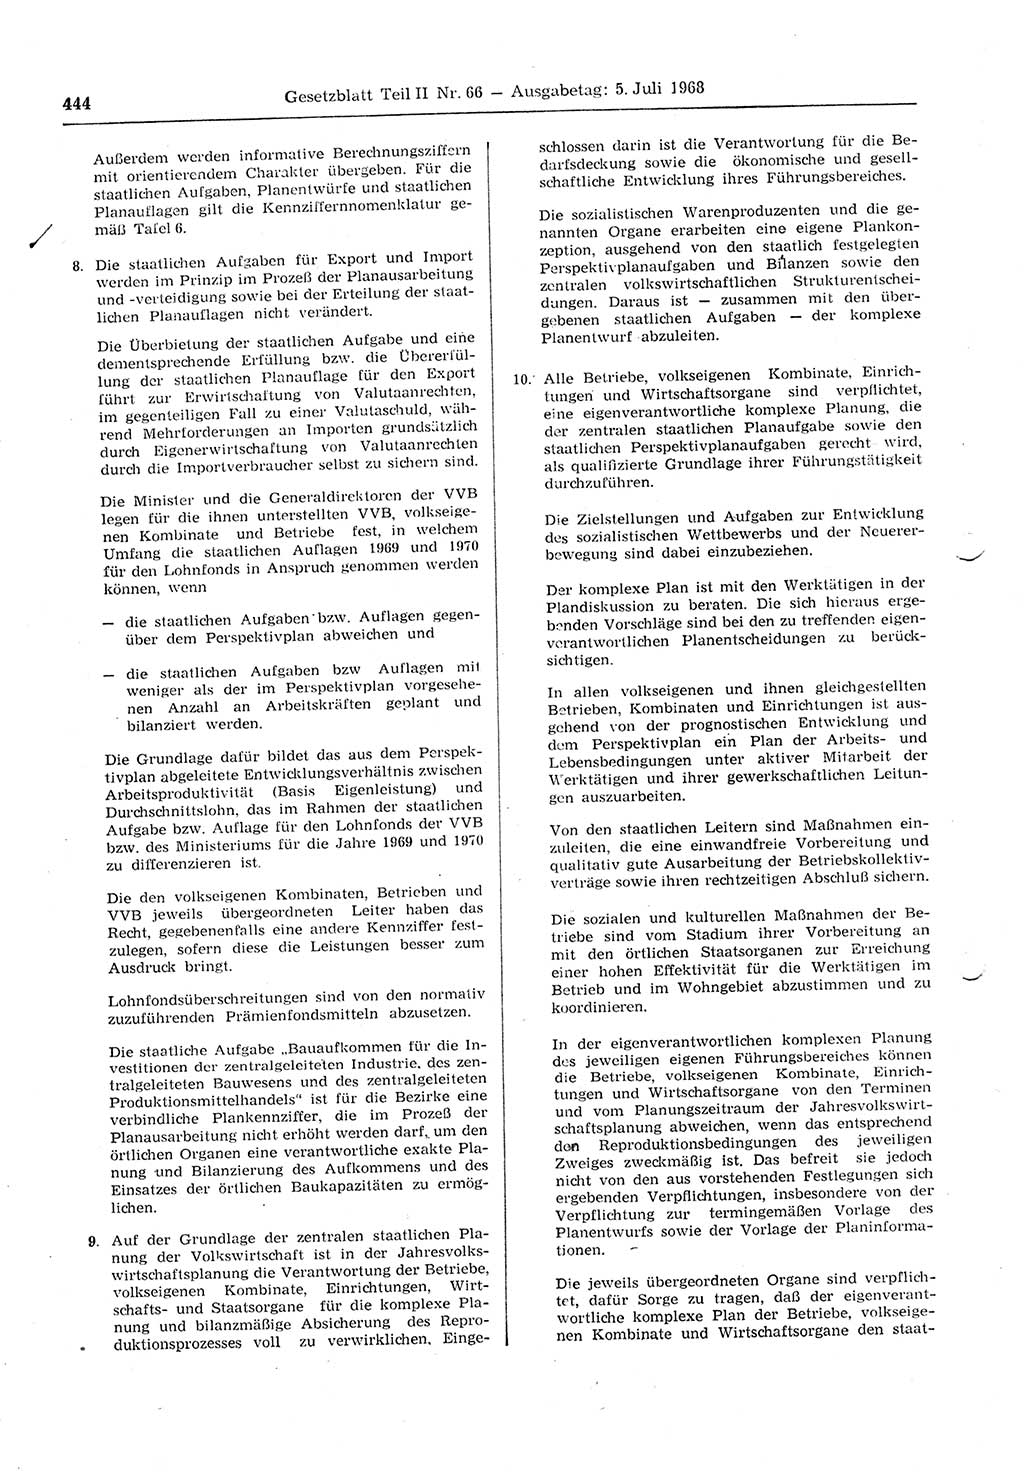 Gesetzblatt (GBl.) der Deutschen Demokratischen Republik (DDR) Teil ⅠⅠ 1968, Seite 444 (GBl. DDR ⅠⅠ 1968, S. 444)